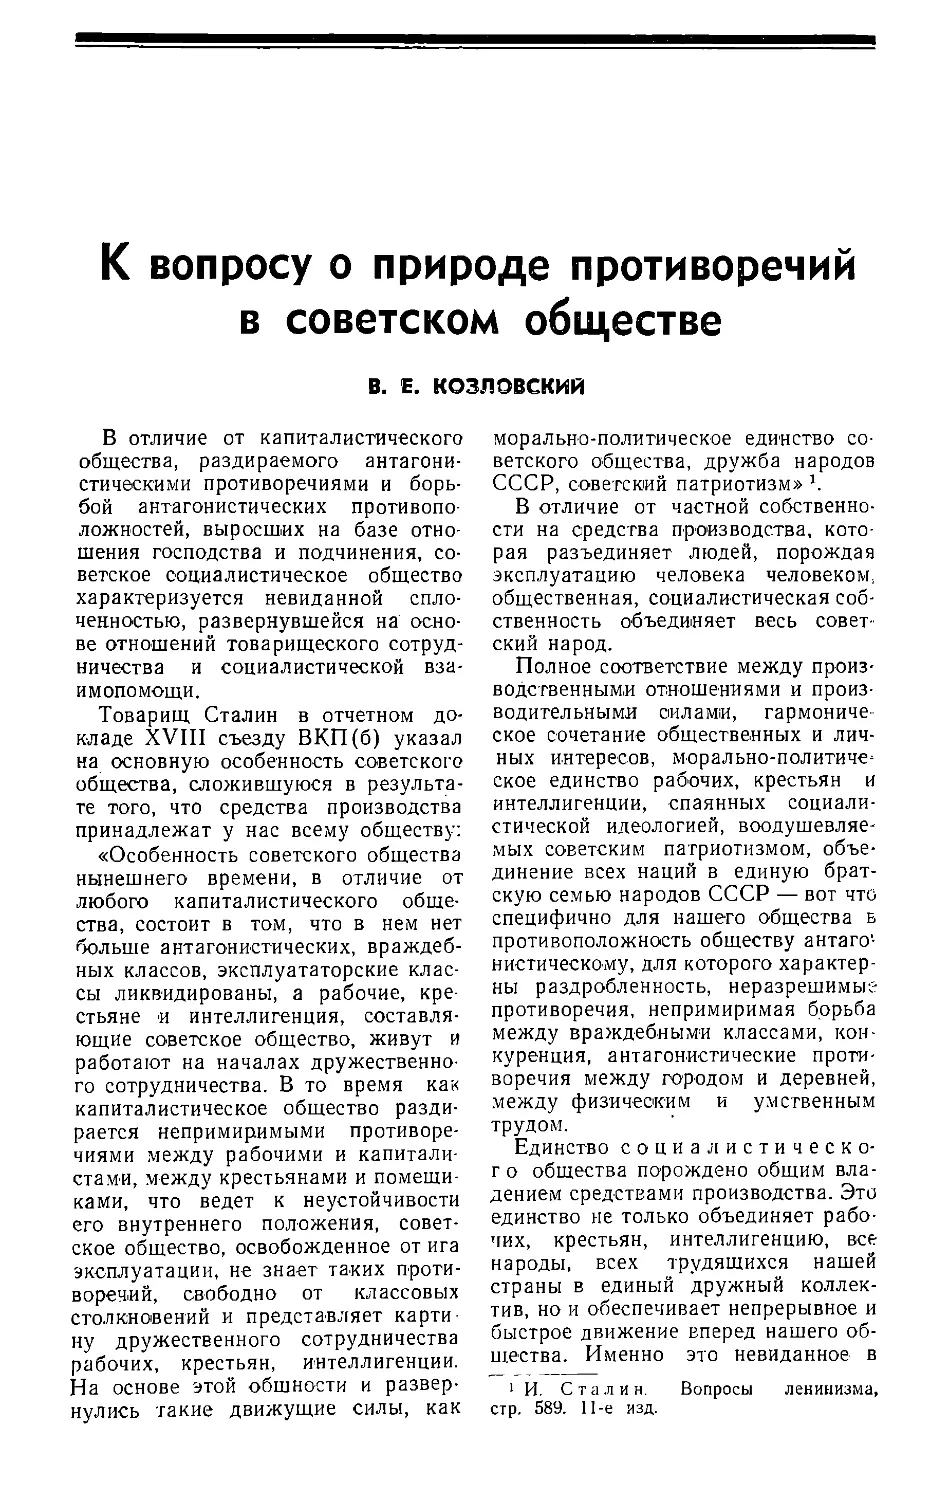 В. Е. Козловский — К вопросу о природе противоречий в советском обществе